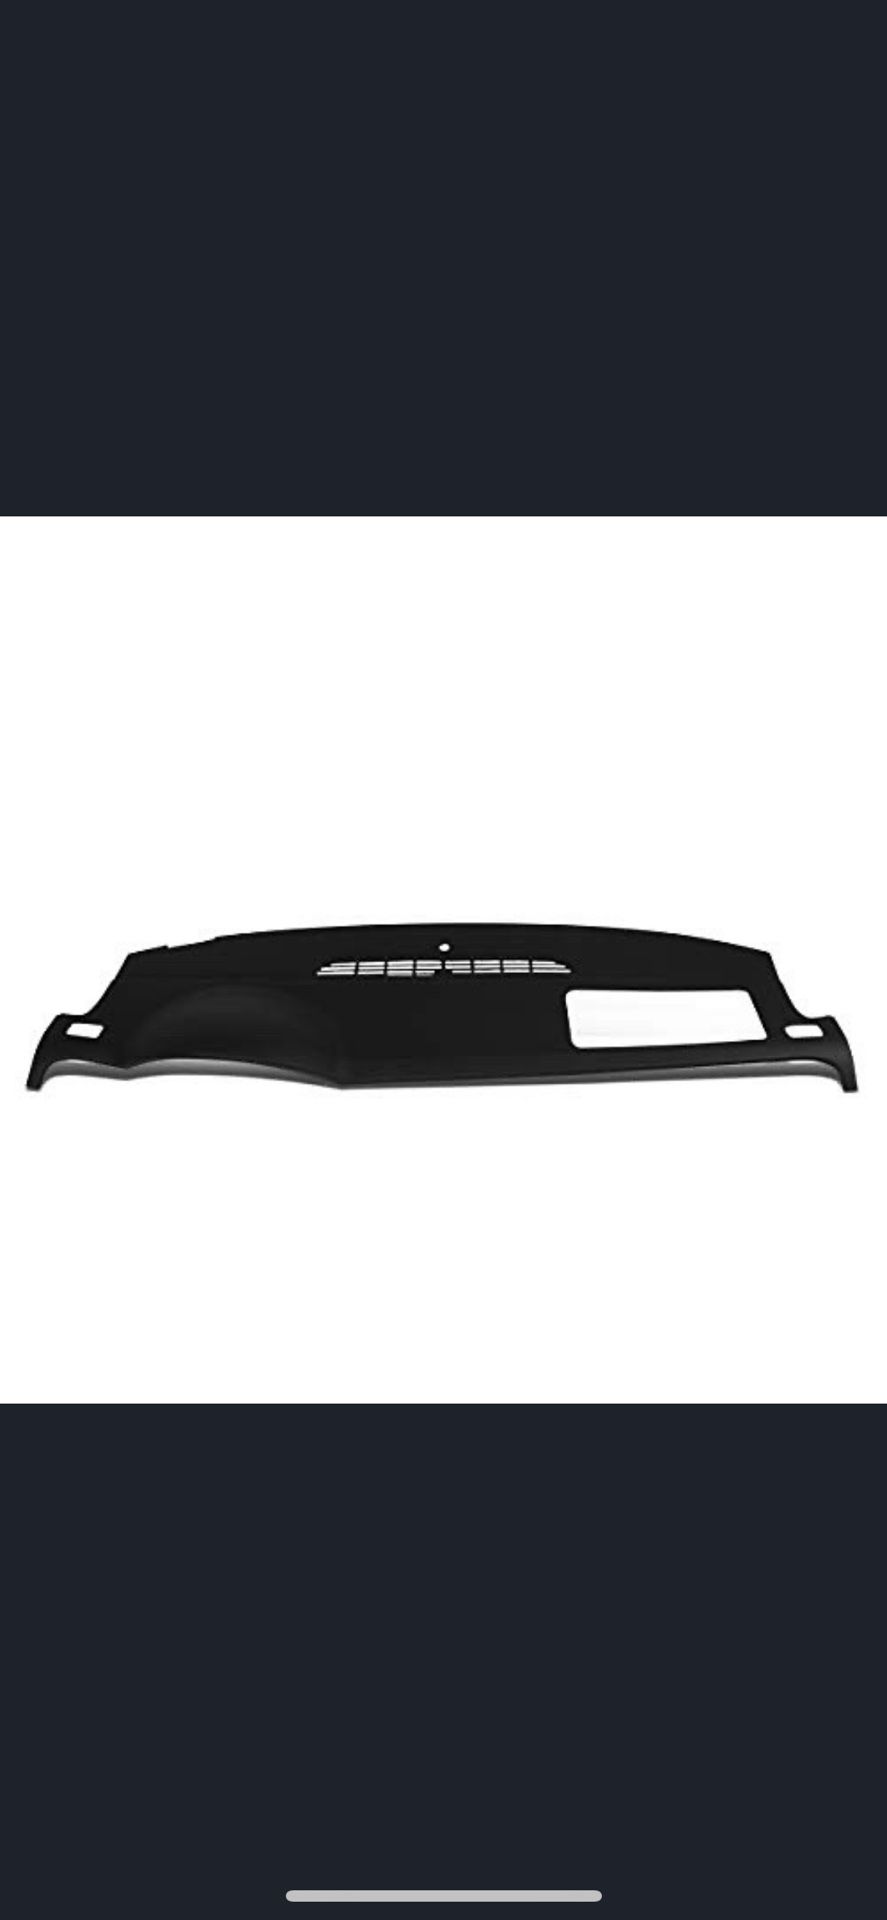 ZTL-Y-0078-BK 07-13 chevy tahoe suburban ABS Dash Board Cover Cap Overlay (Black)